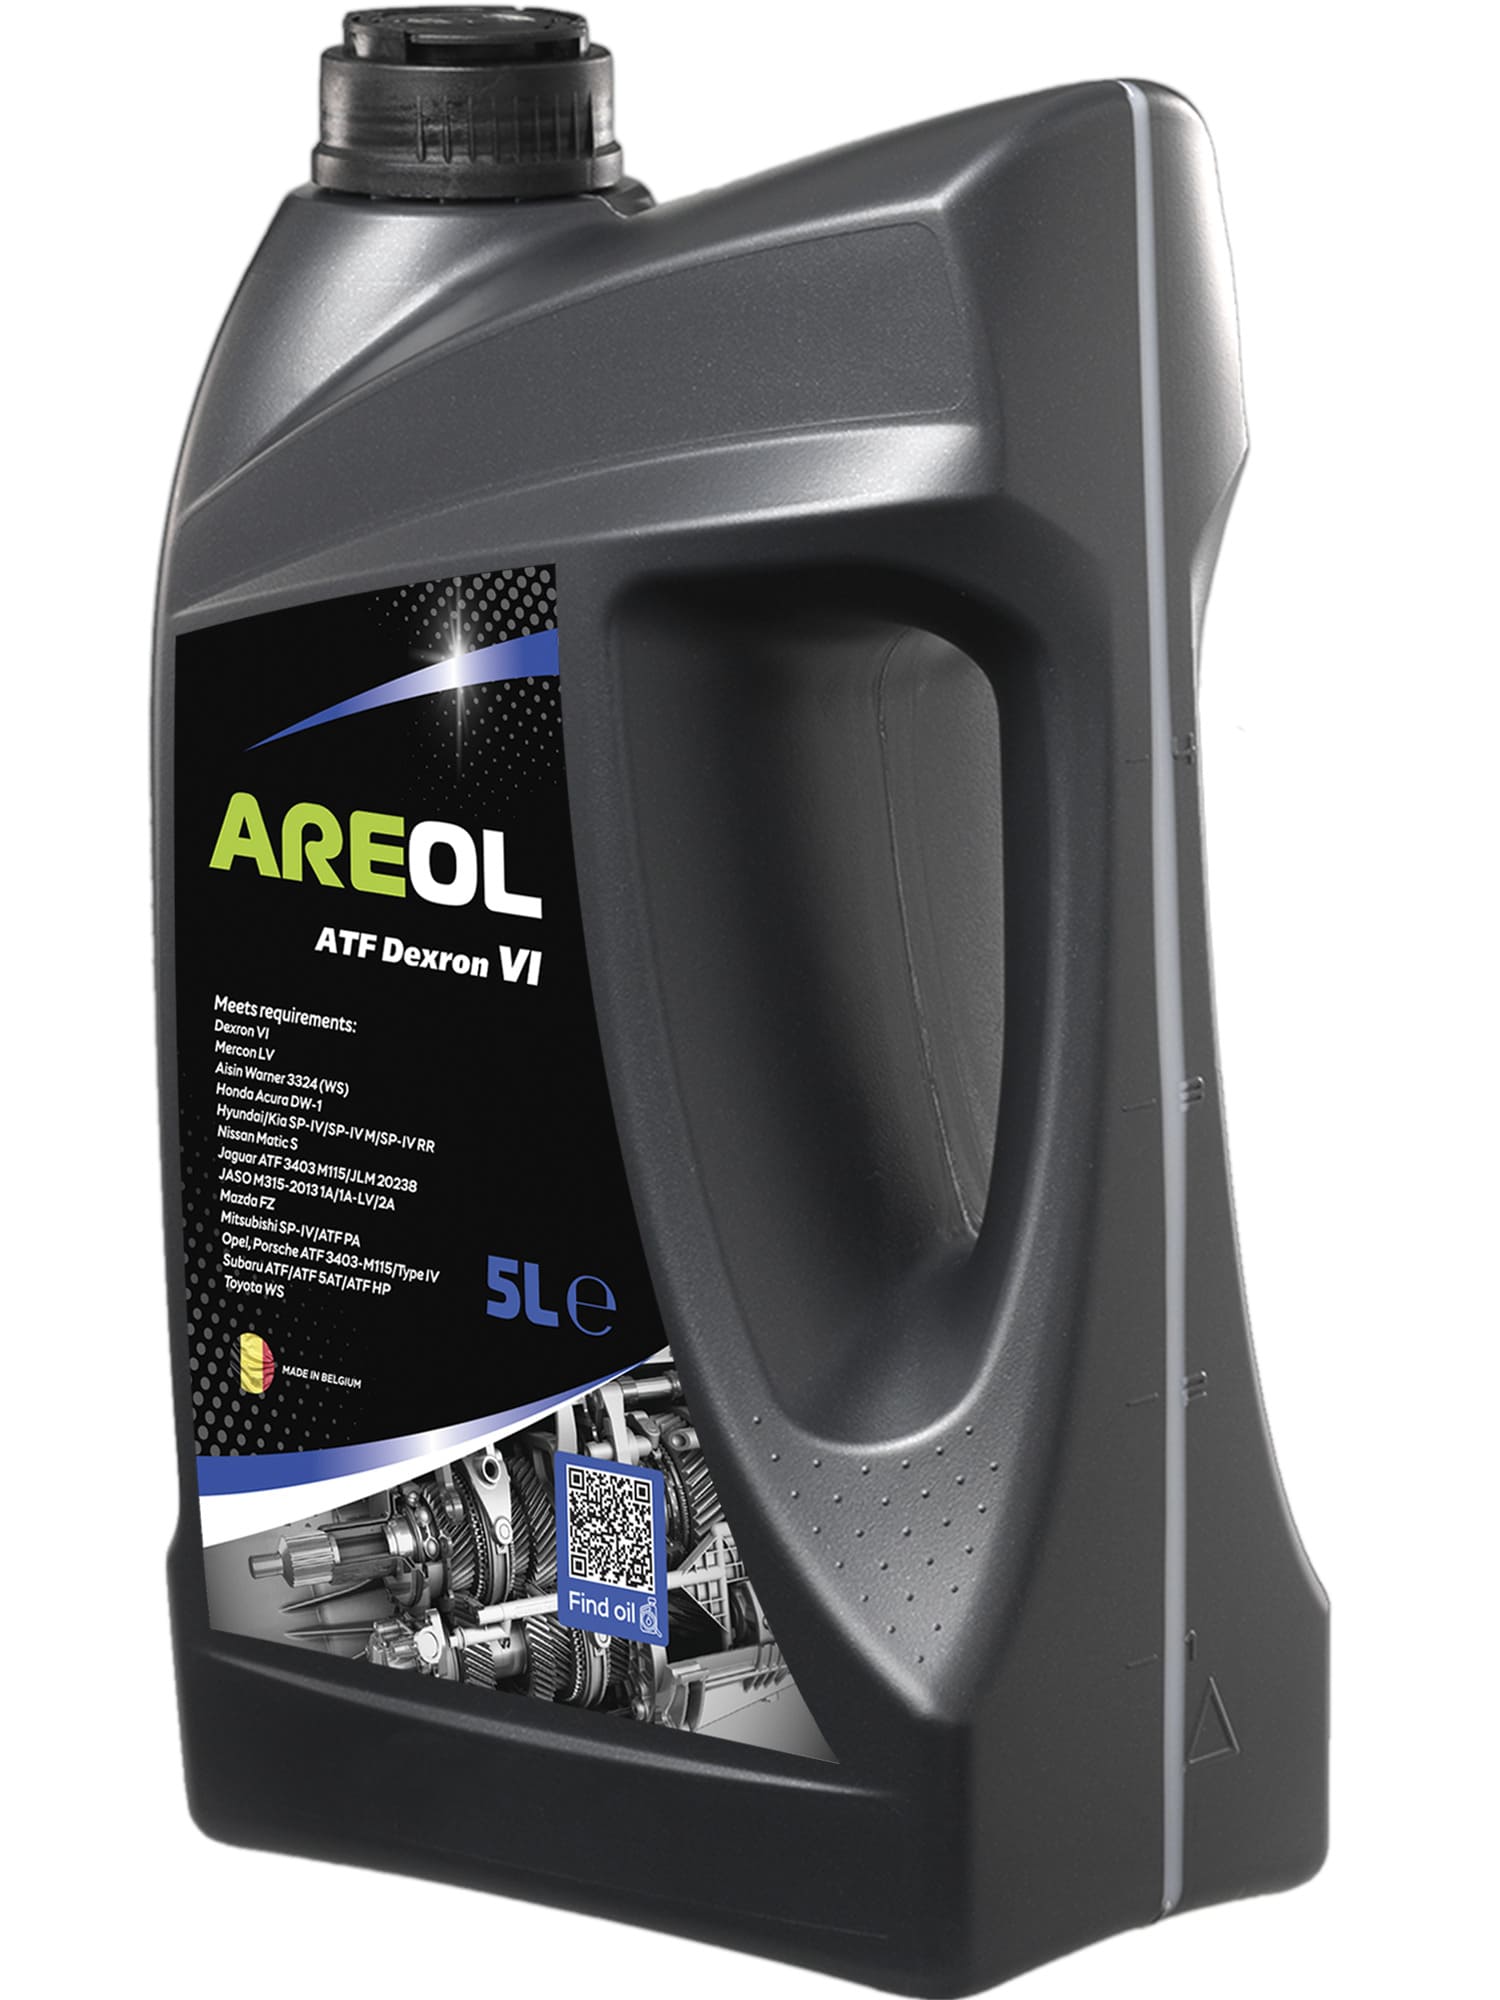 Gear Oil AREOL ATF Dexron VI 5L